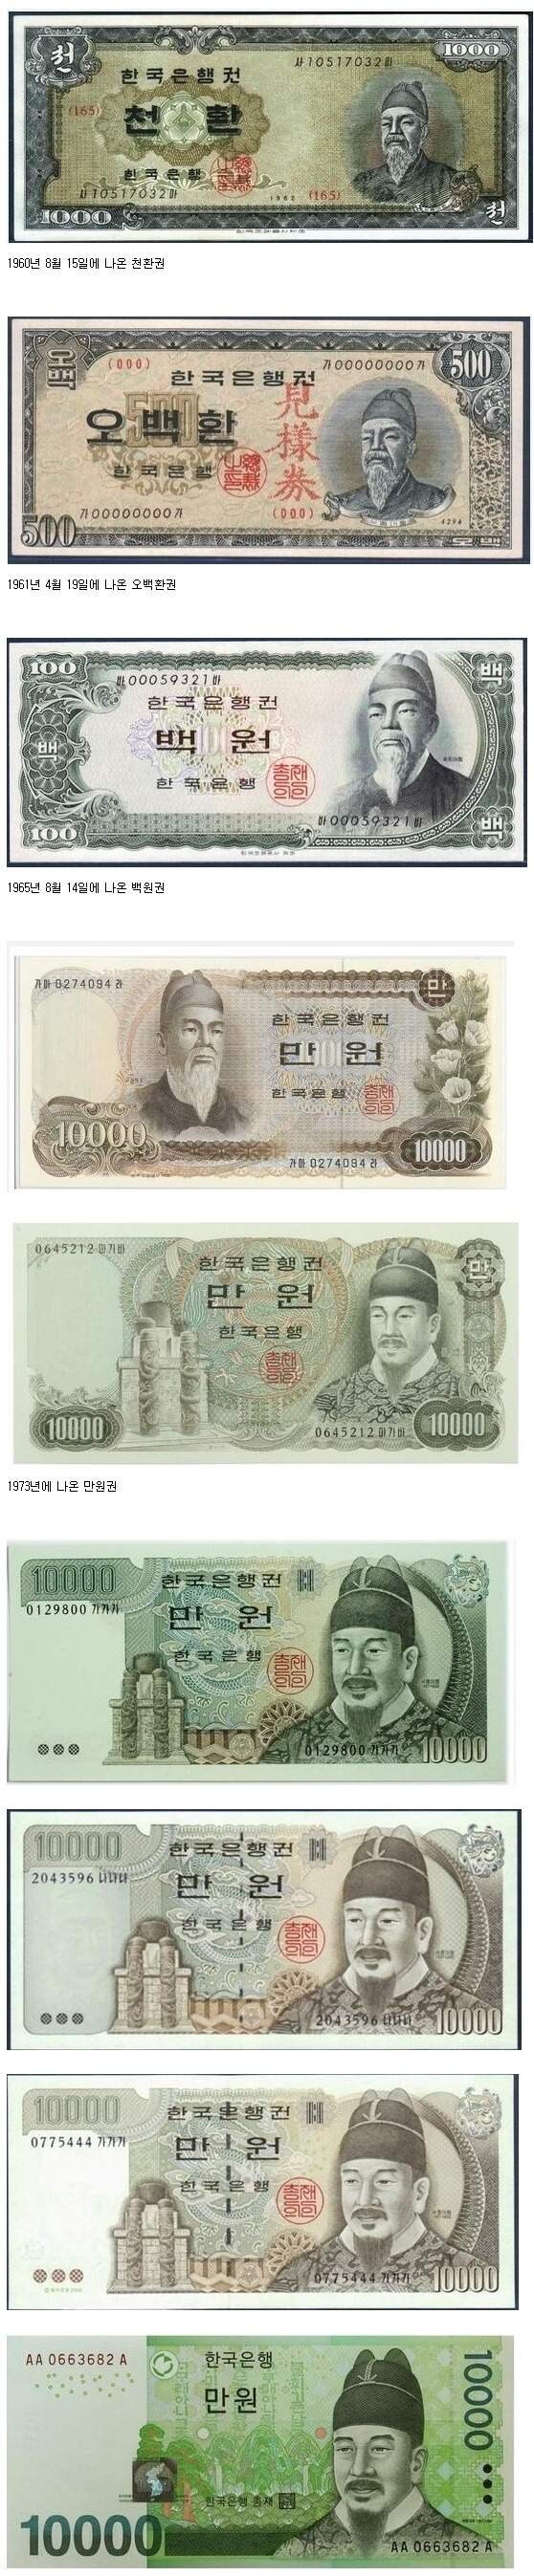 한국 지폐 세종대왕 그림 변천.jpg